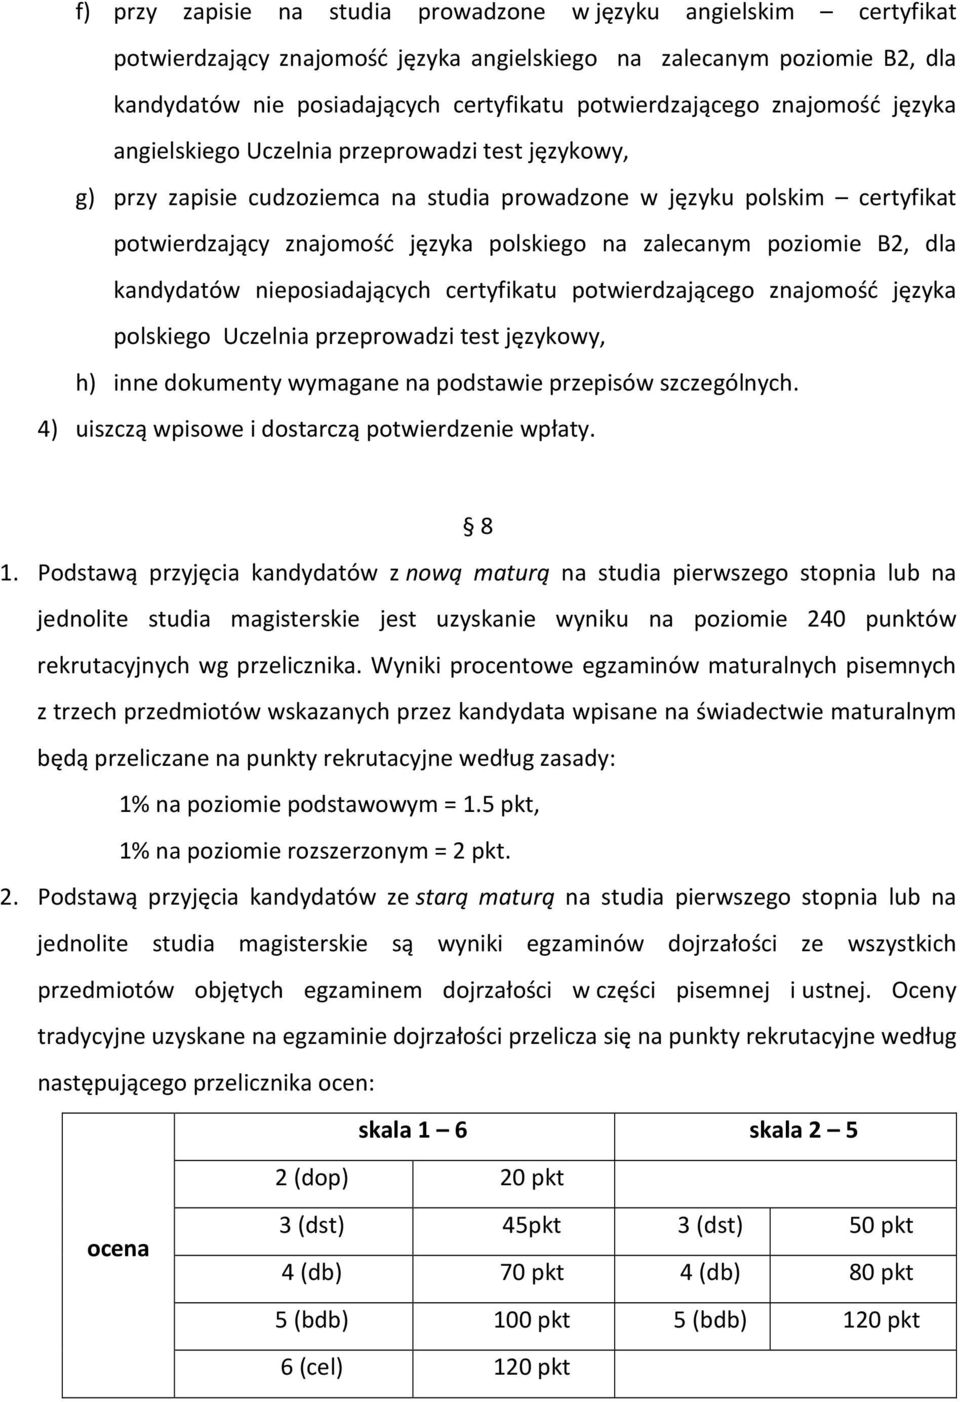 polskiego na zalecanym poziomie B2, dla kandydatów nieposiadających certyfikatu potwierdzającego znajomość języka polskiego Uczelnia przeprowadzi test językowy, h) inne dokumenty wymagane na